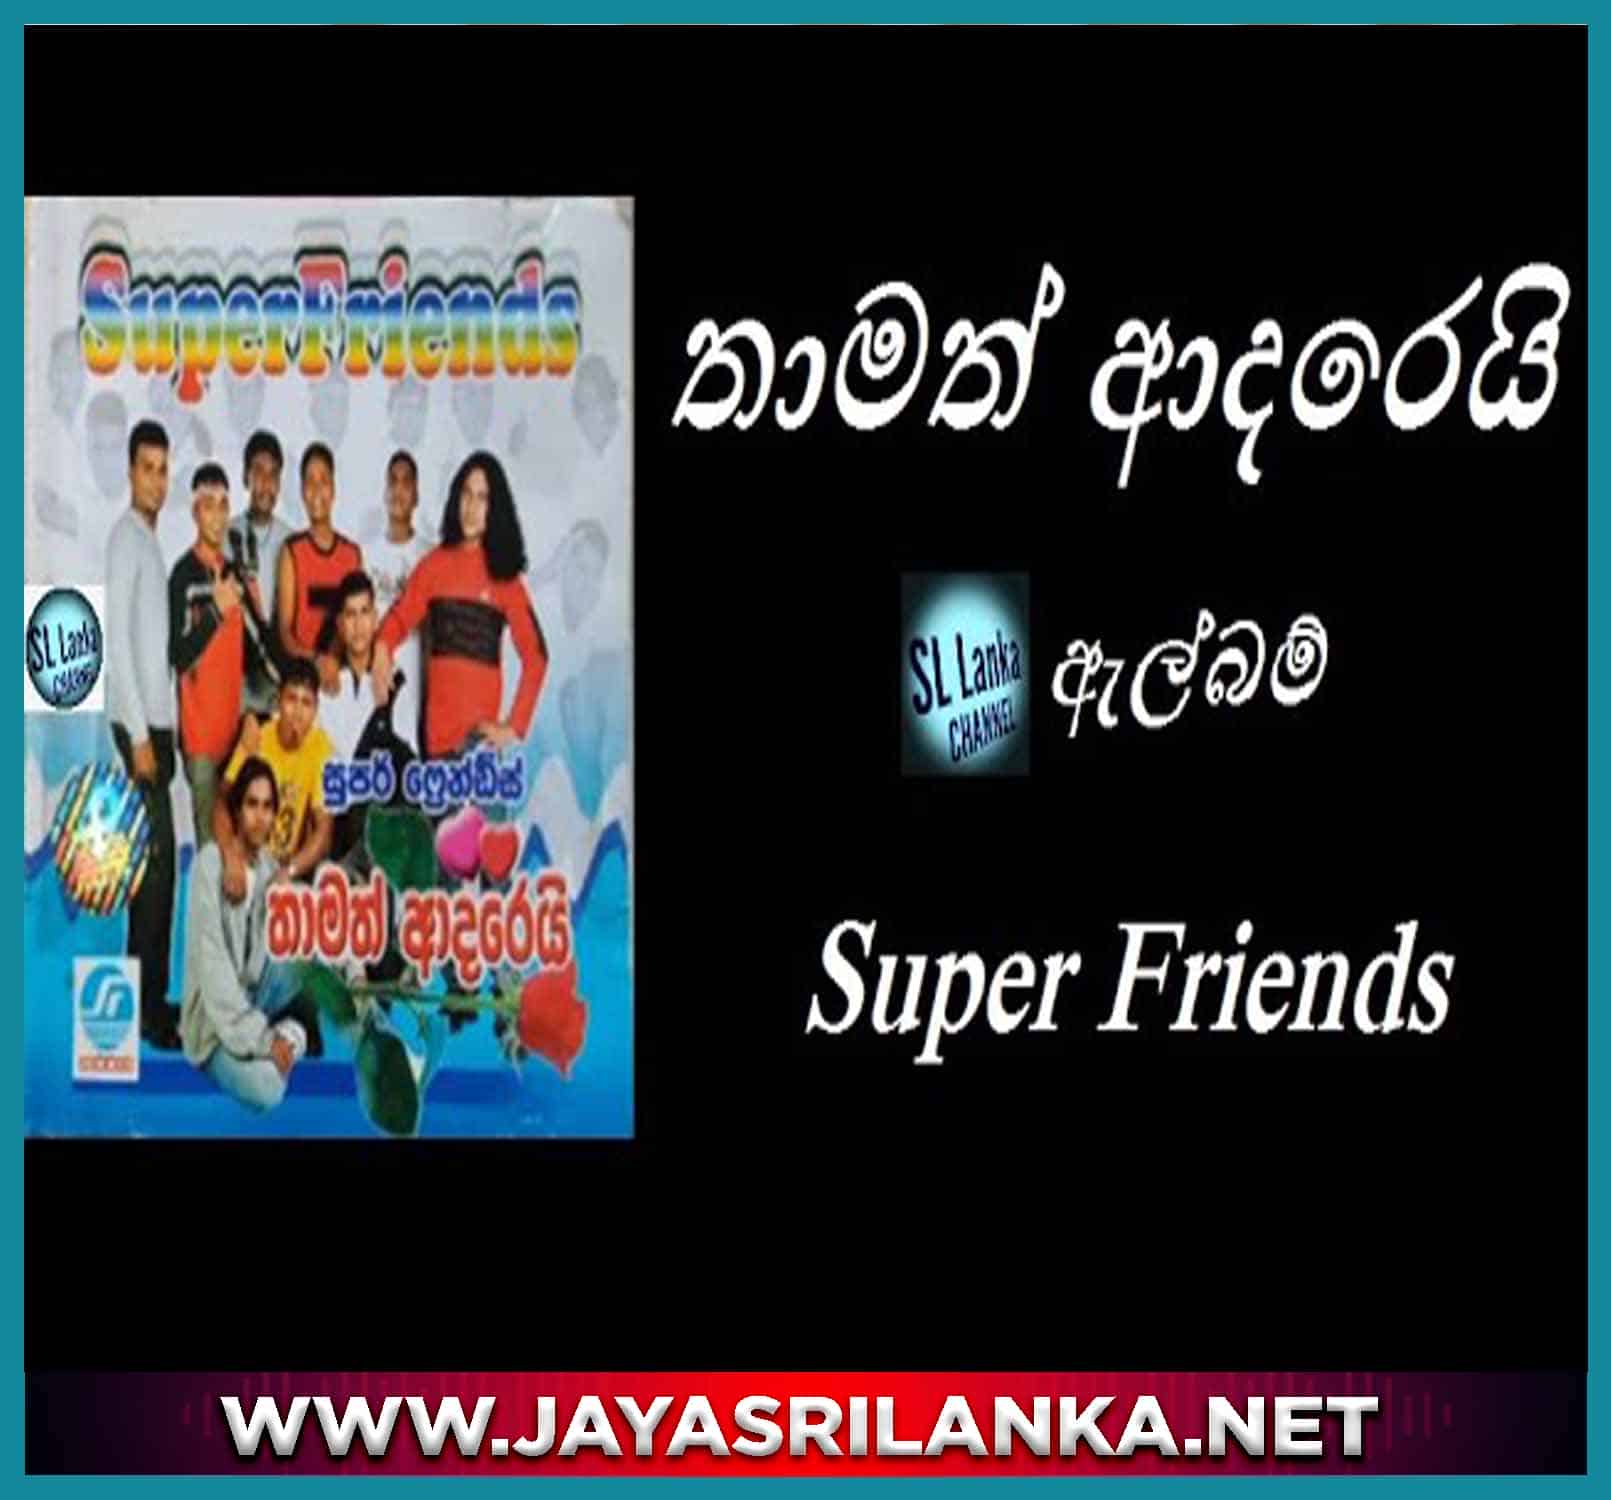 Nilambare Dilena Tharu Mal - Super Friends mp3 Image